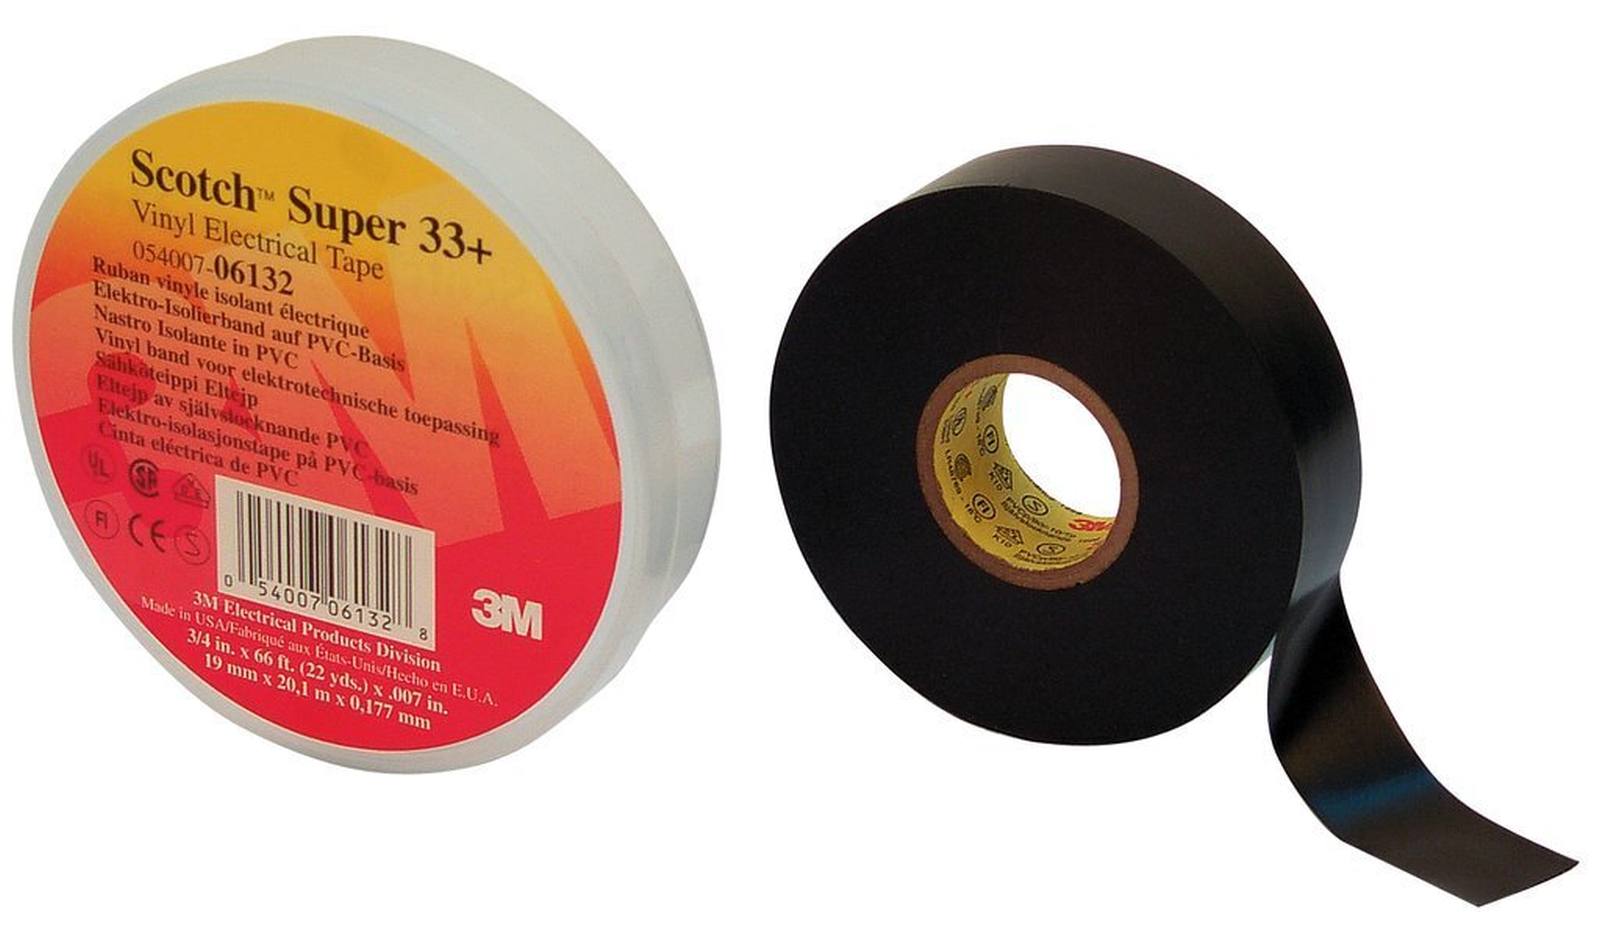 3M Scotch Super 33+ vinyl electrical insulating tape, black, 25 mm x 33 m, 0.18 mm